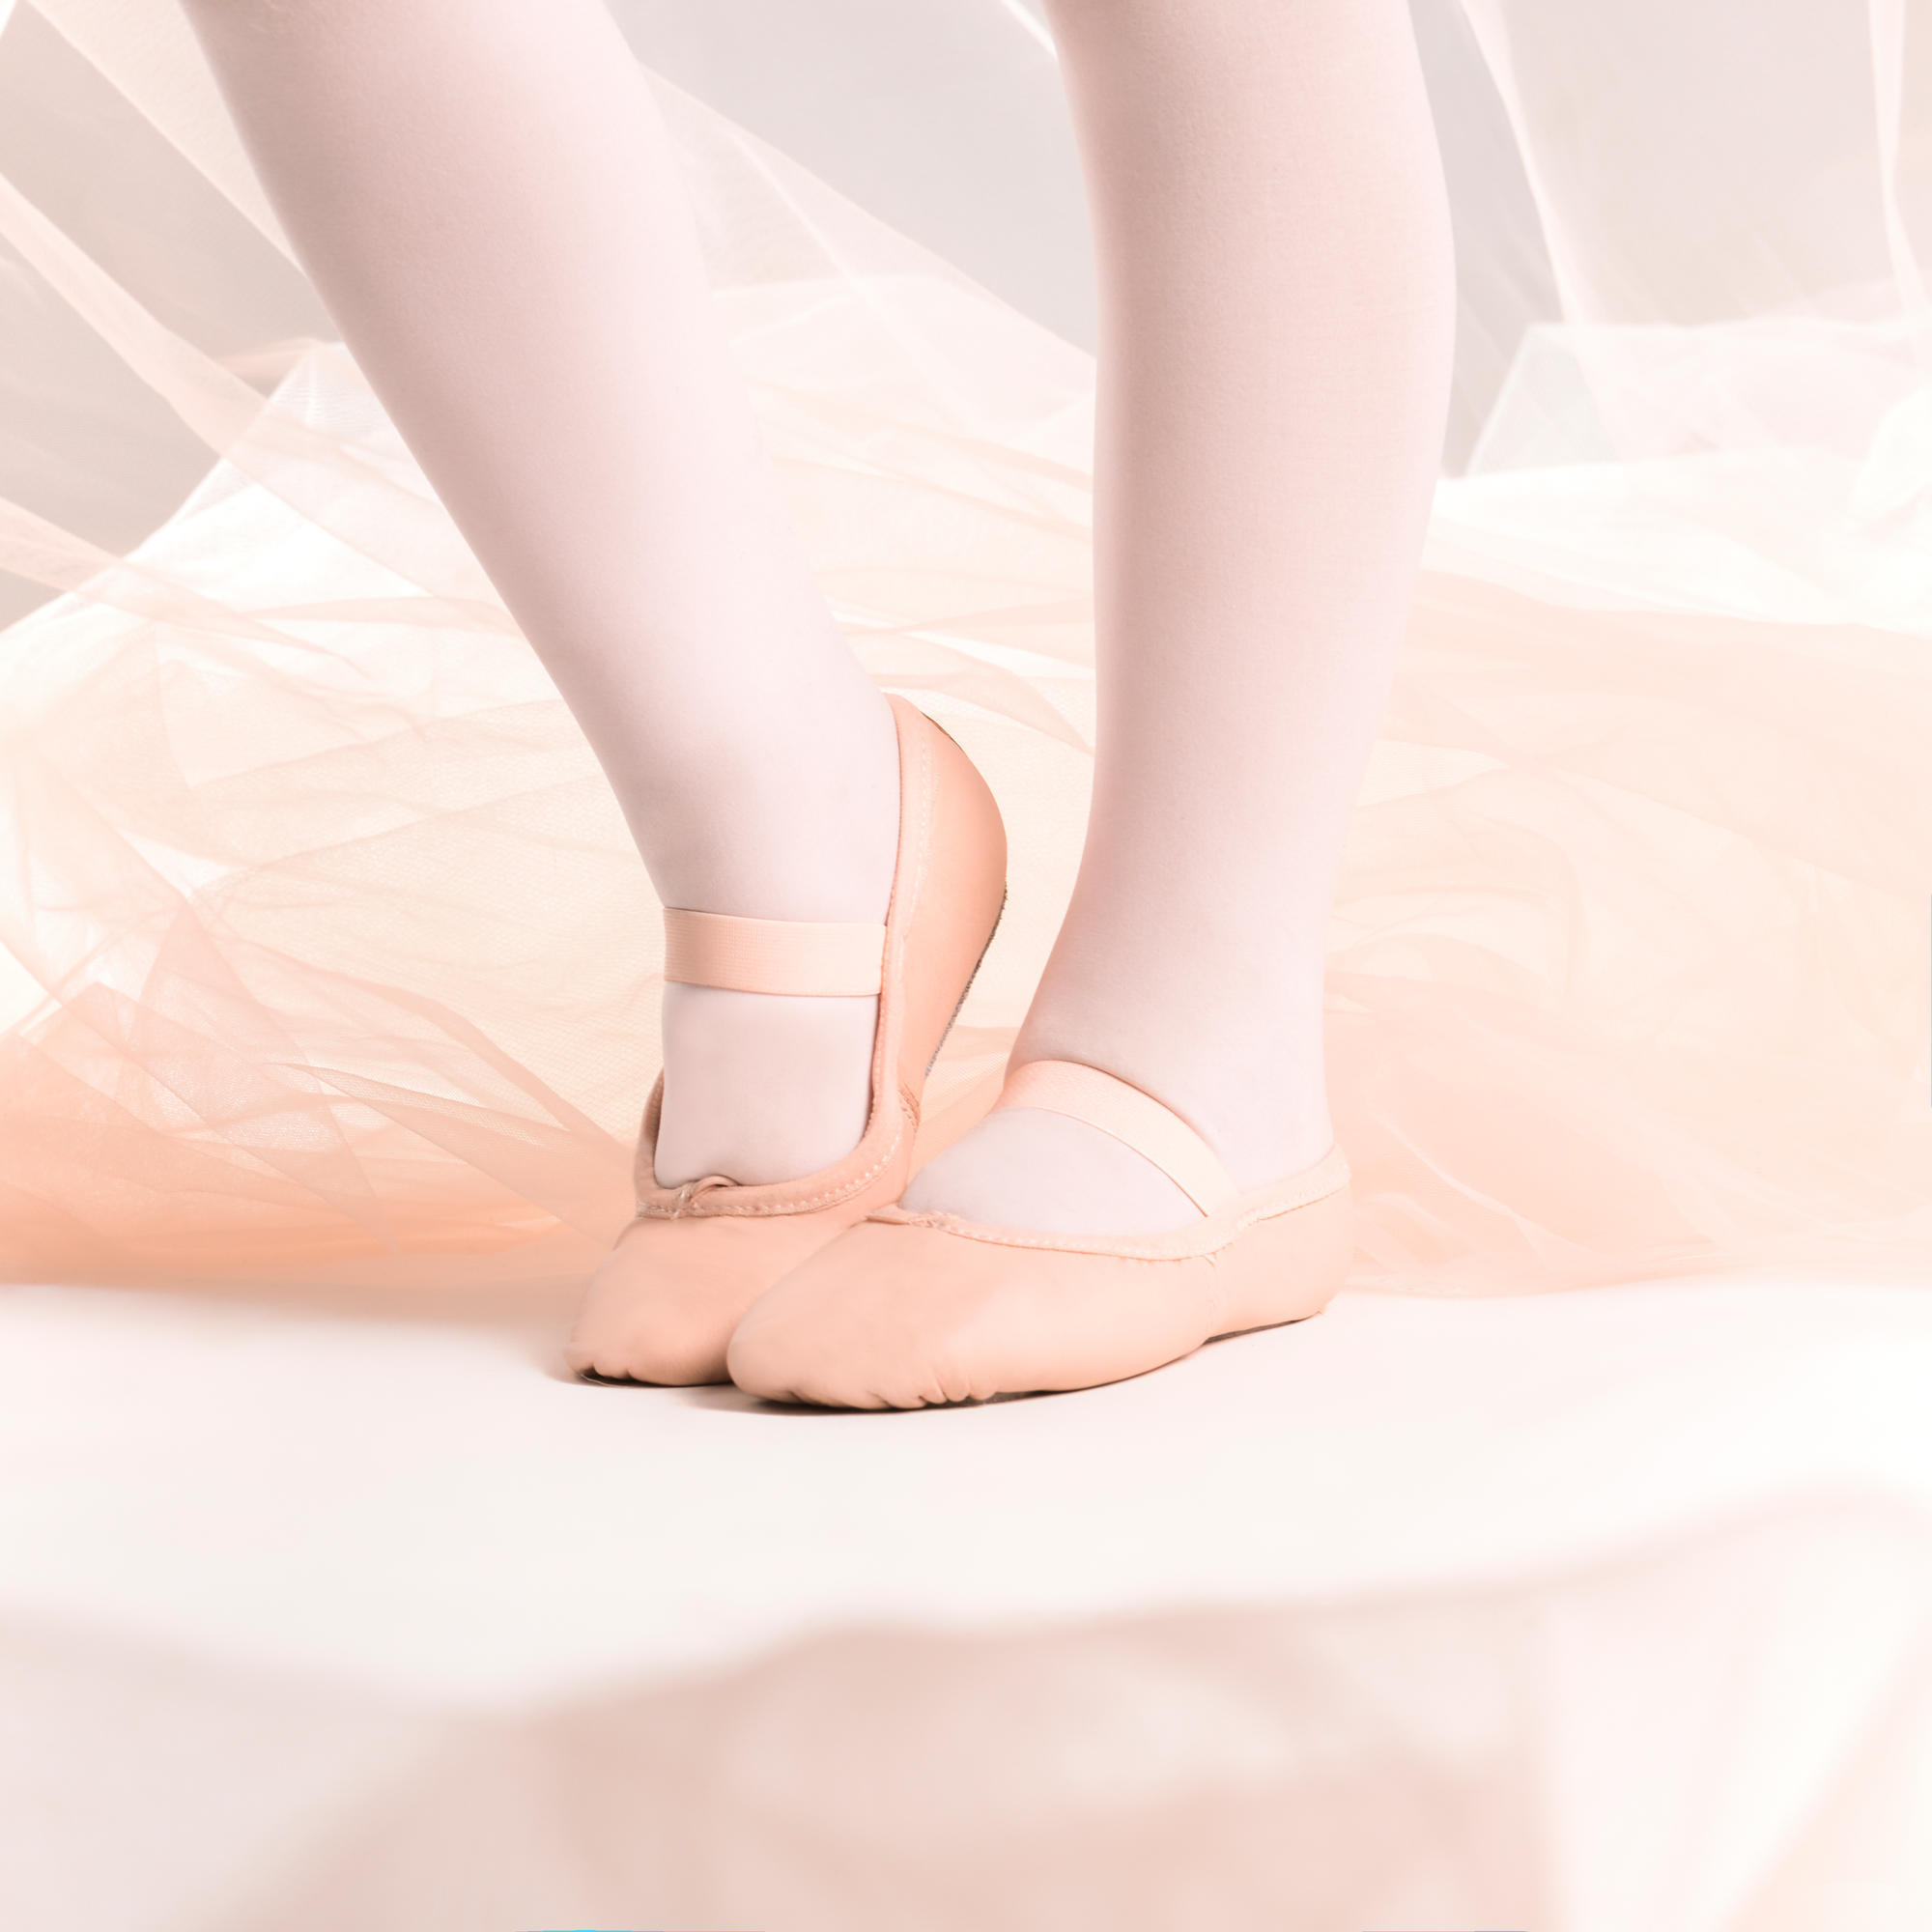 Demi-poante balet piele talpă întreagă mărimile 25-40 roz decathlon.ro  Balet